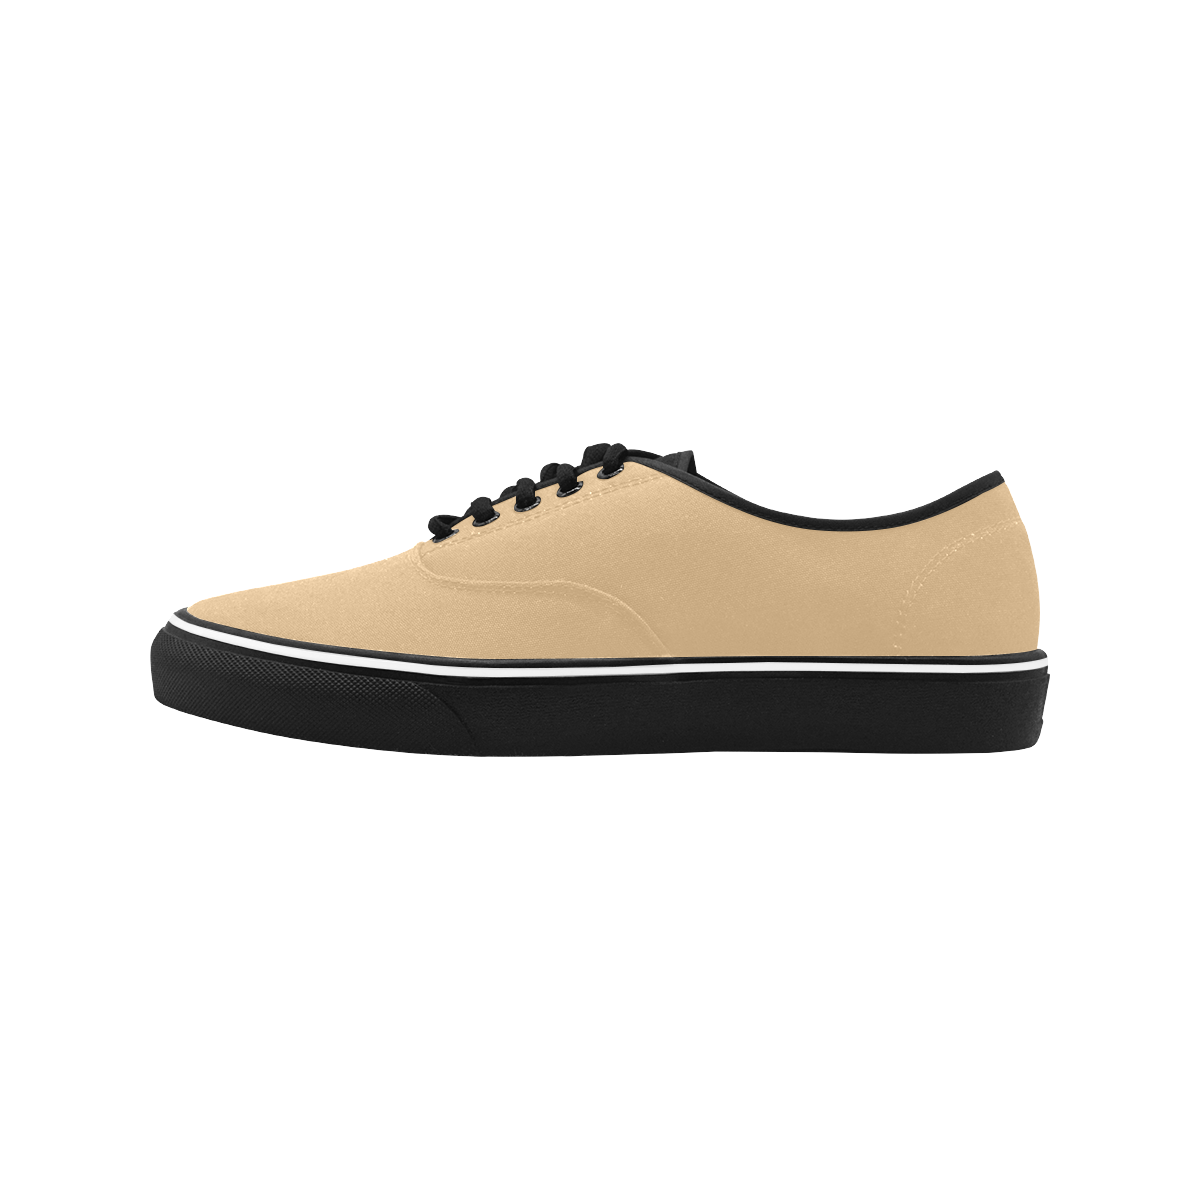 color burlywood Classic Men's Canvas Low Top Shoes/Large (Model E001-4)